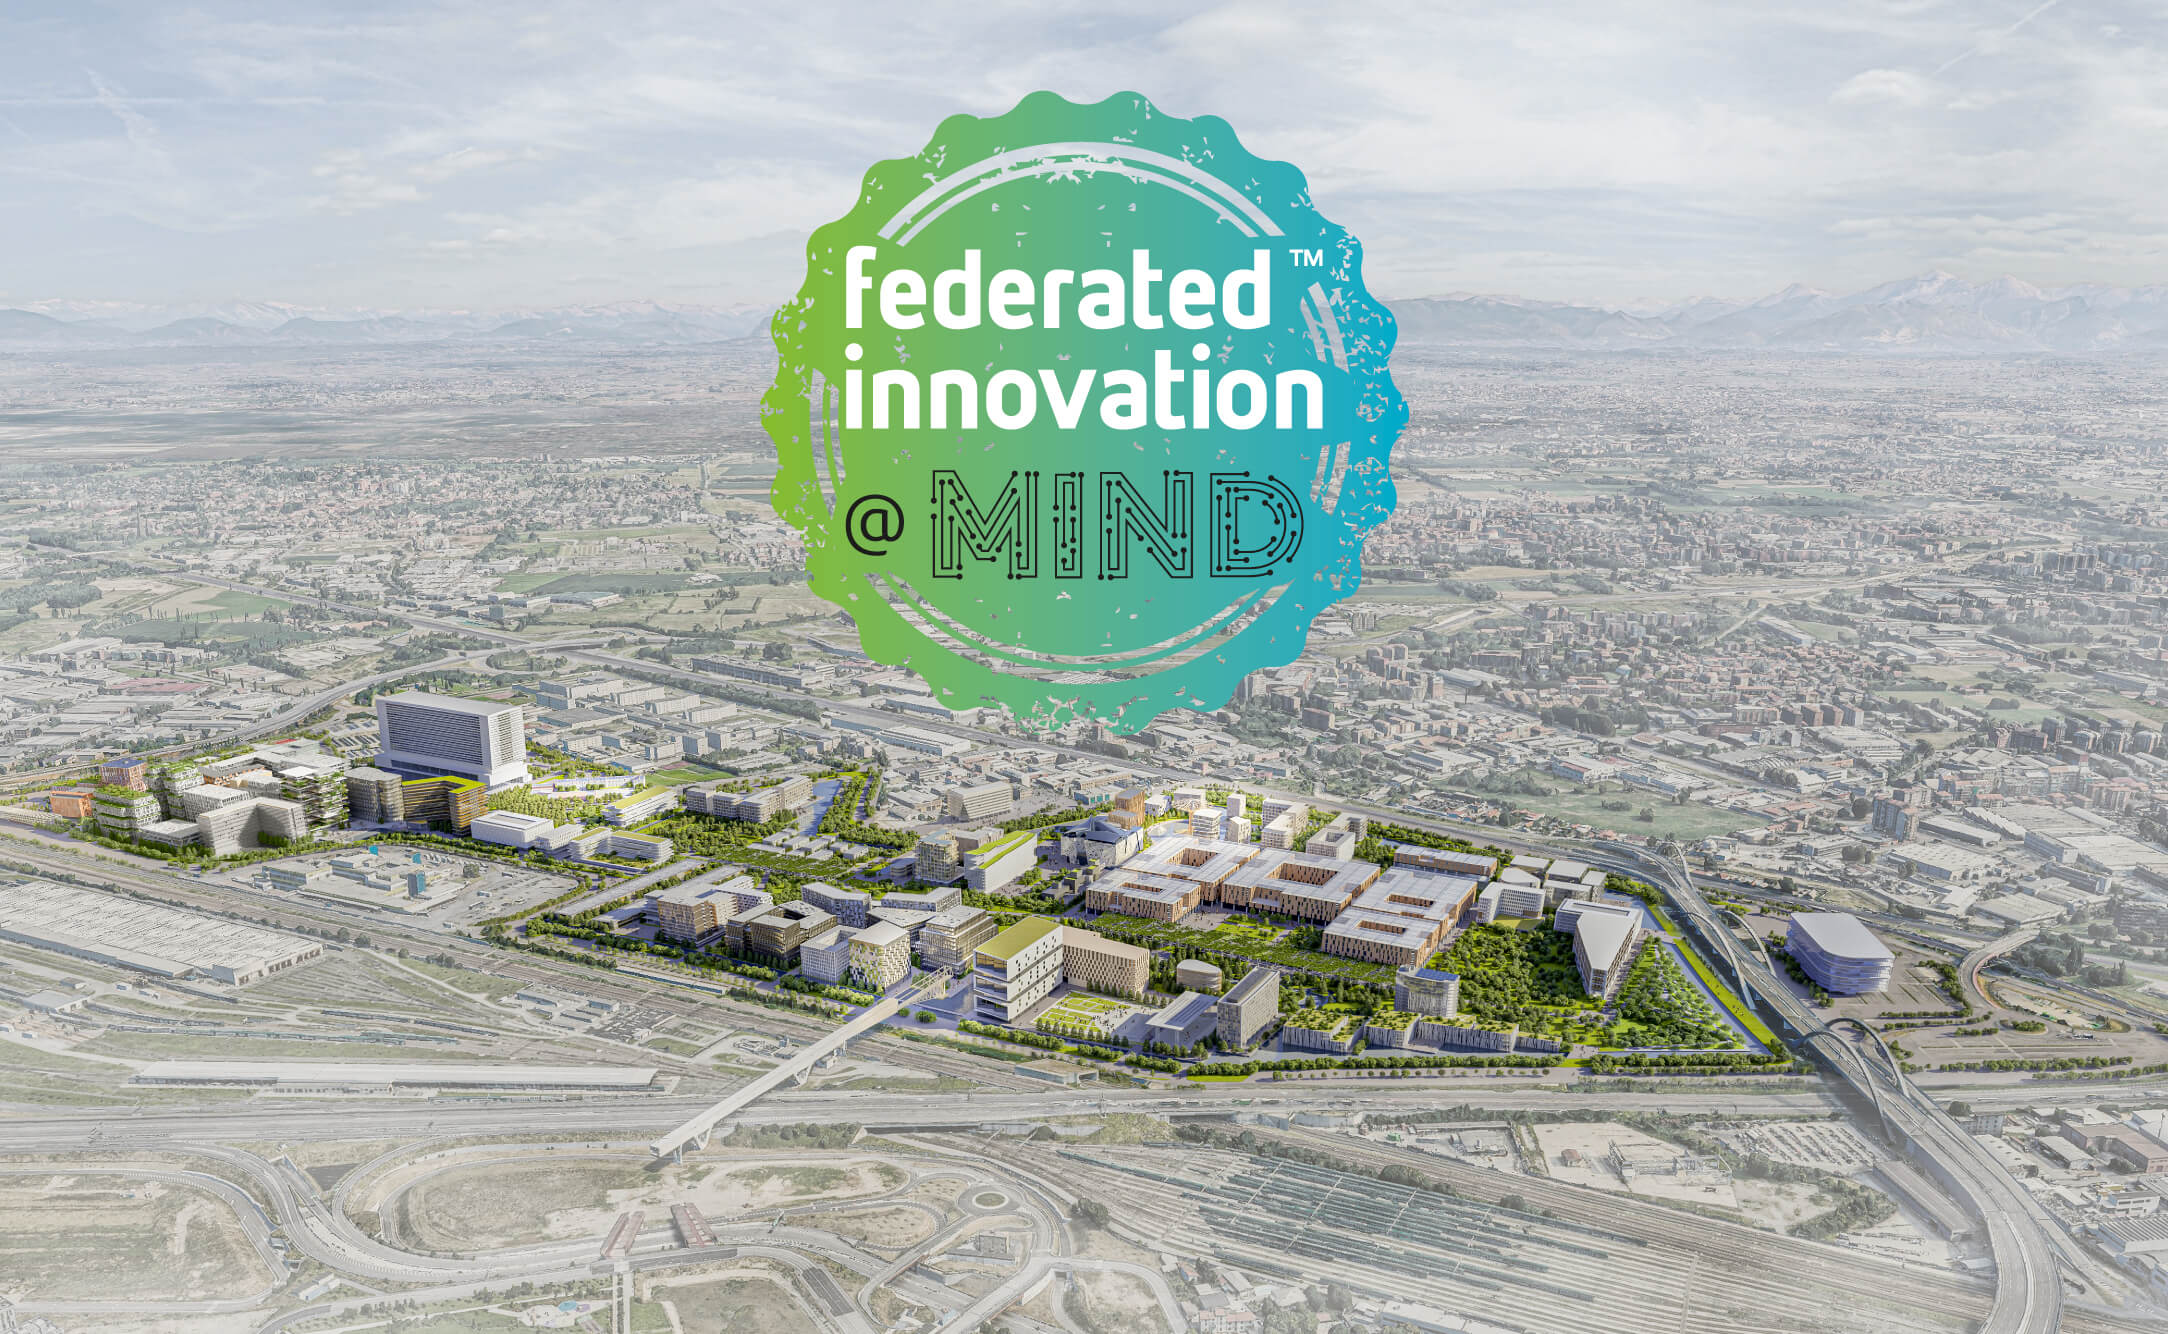 Nasce la Federated Innovation, un modello che mira a sviluppare innovazione nel campo delle Life Sciences e City of the Future